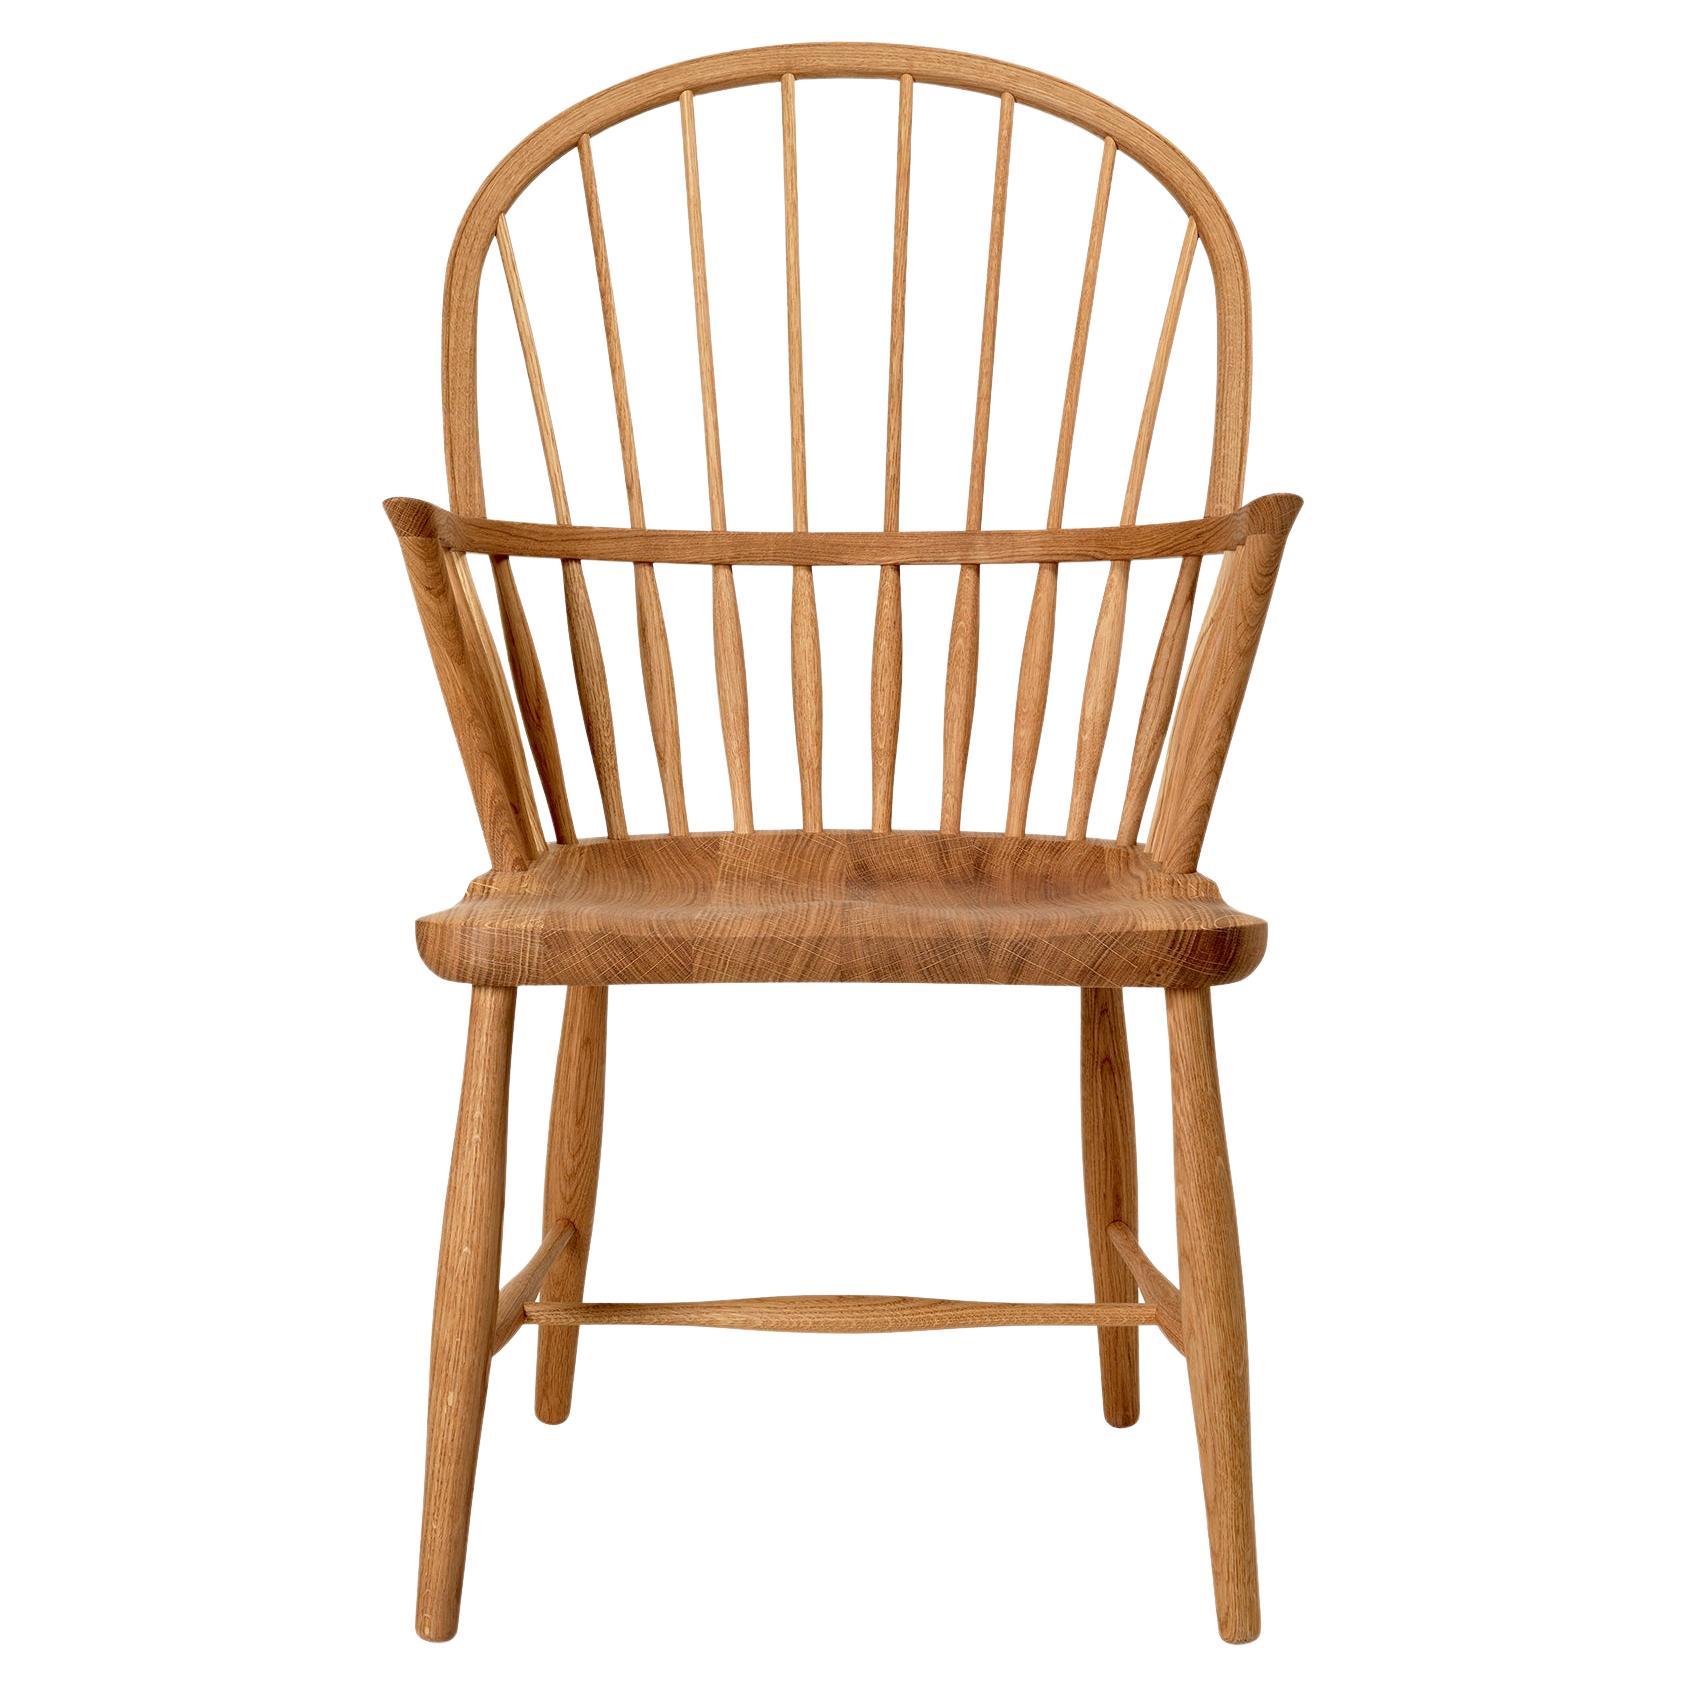 Frits Henningsen 'FH38 Windsor' Chair in Oiled Oak for Carl Hansen & Son For Sale